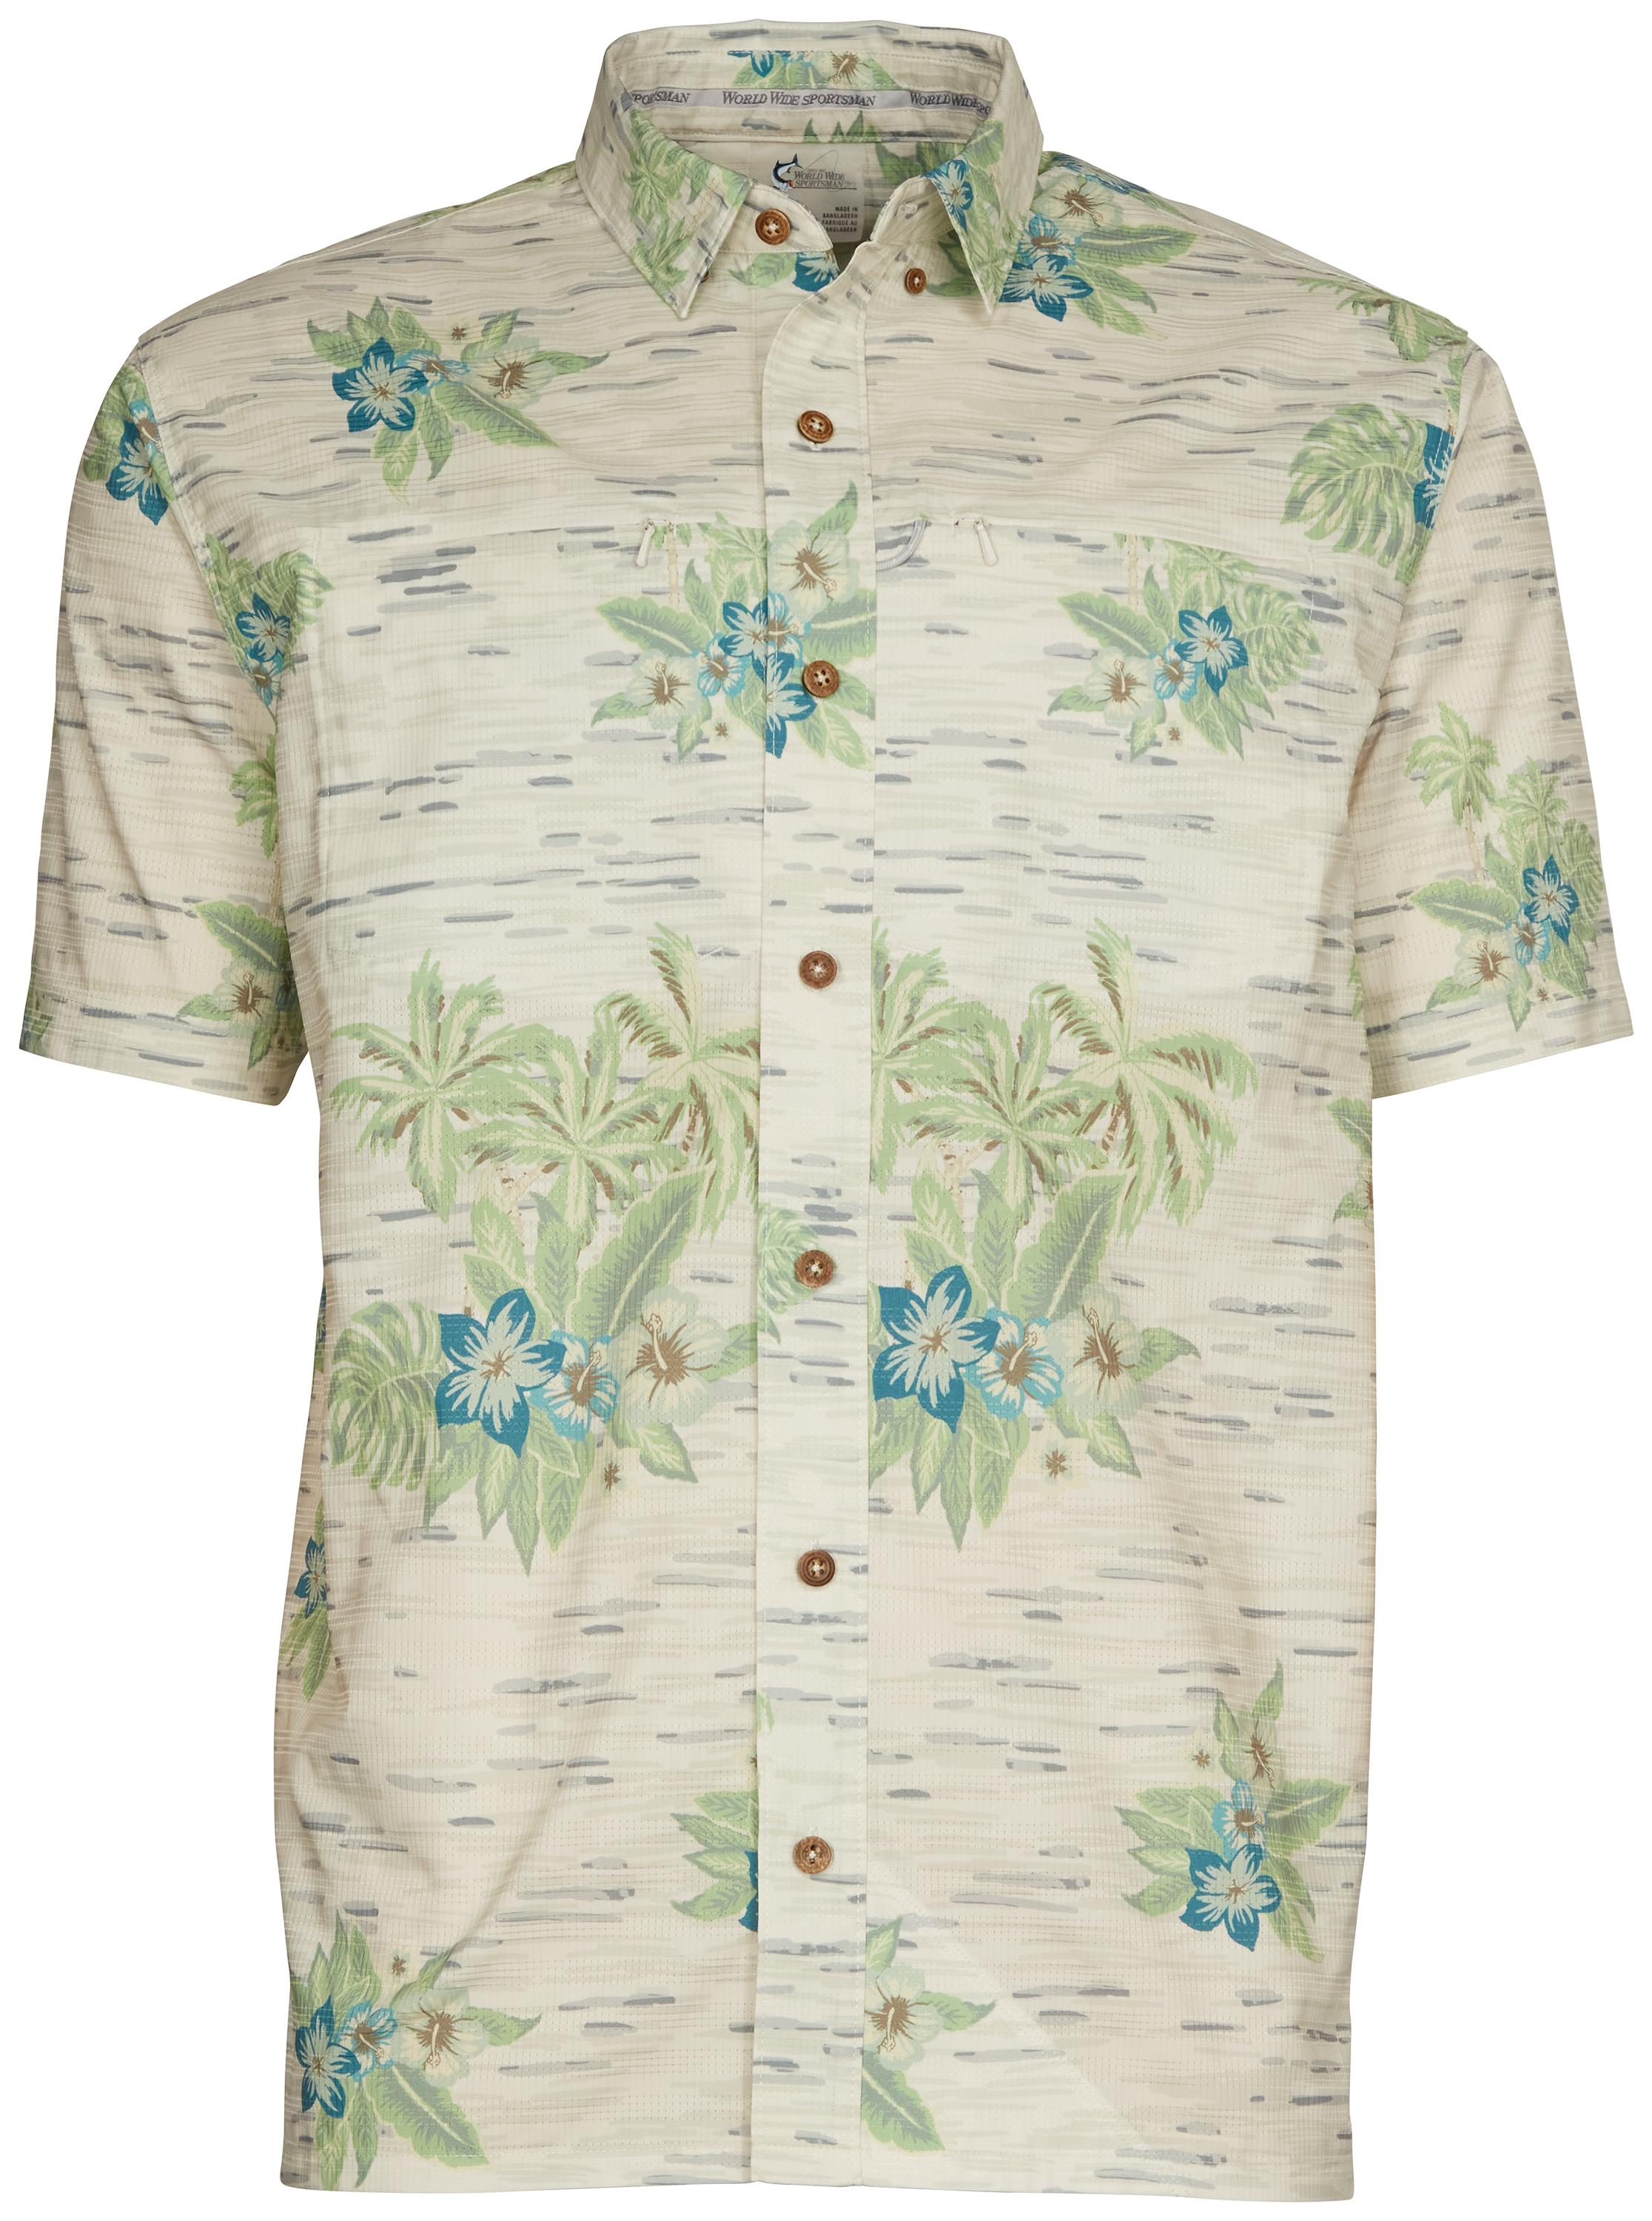 World Wide Sportsman Seacrest Print Short-Sleeve Button-Down Shirt for Men - Gray Hawaiian - XL